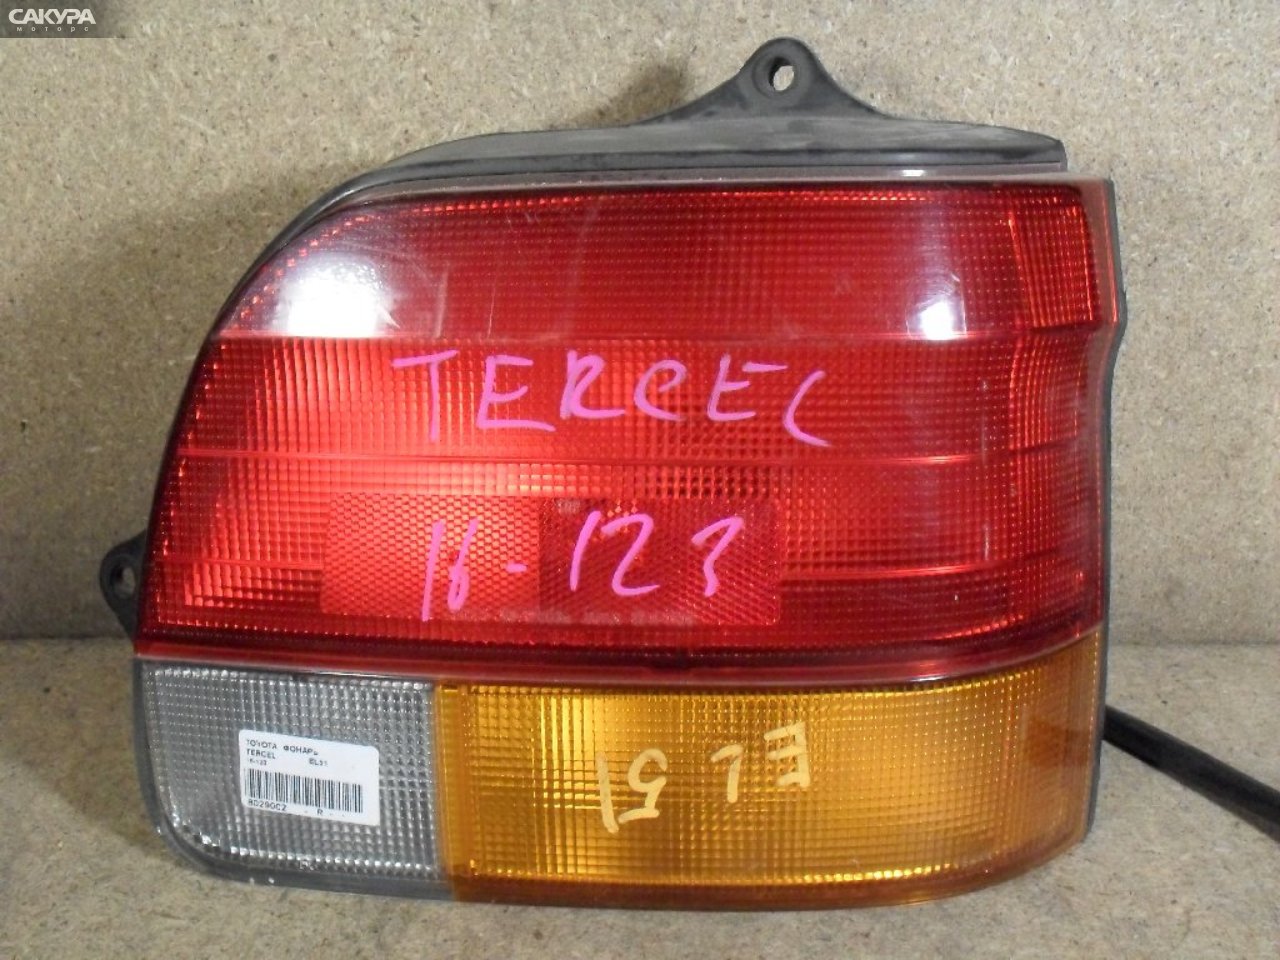 Фонарь стоп-сигнала правый Toyota Tercel EL51 16-123: купить в Сакура Абакан.